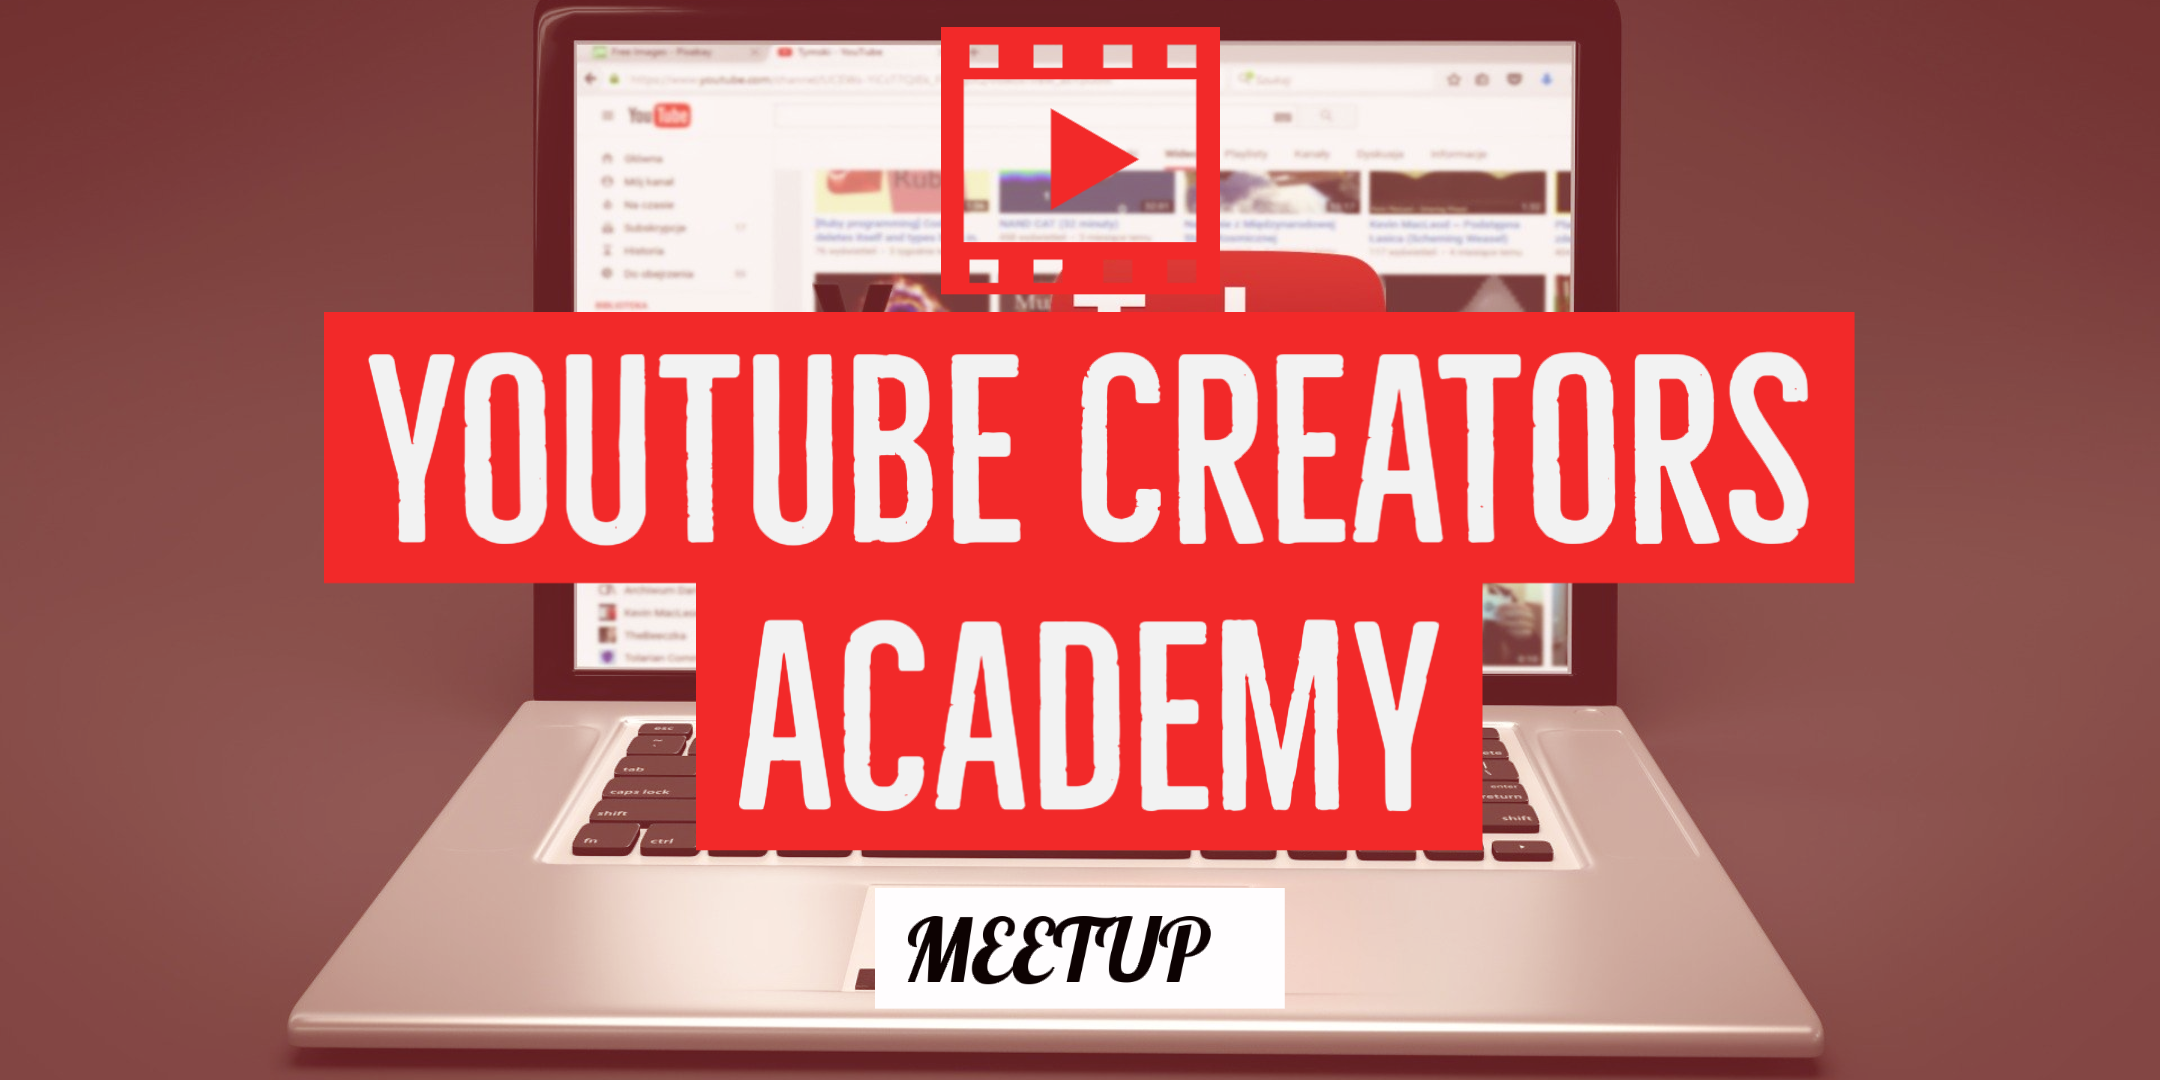 YouTube Creators Academy 2020